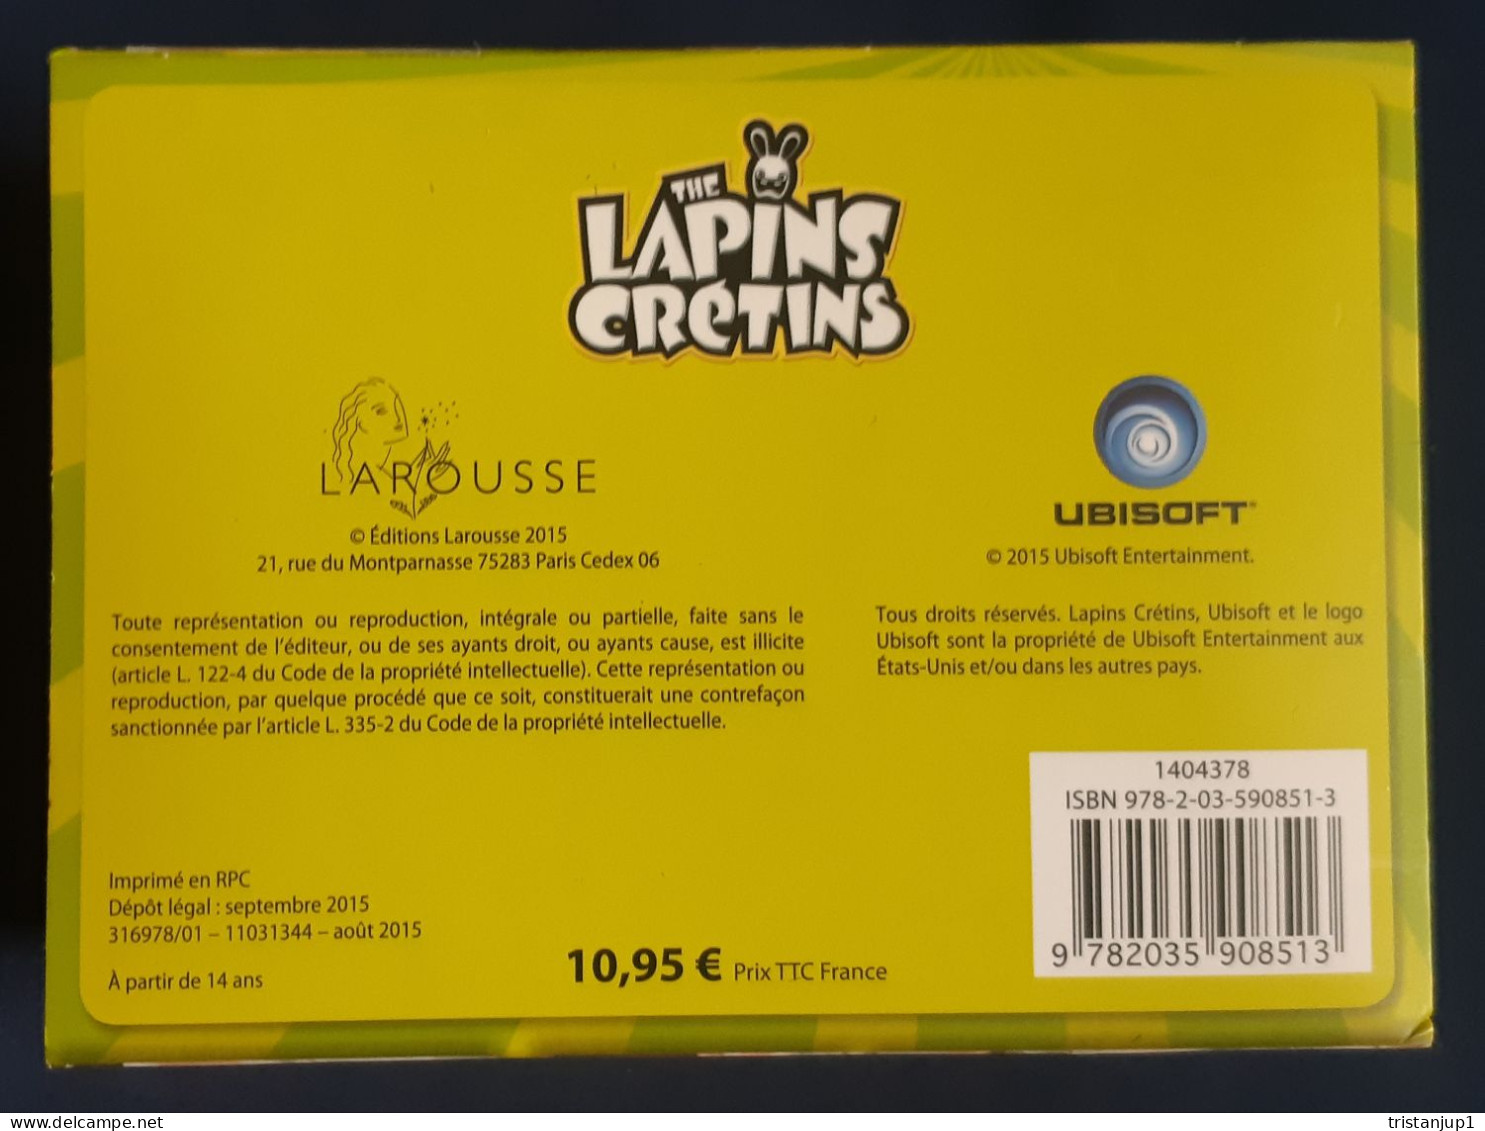 The Lapins Crétins Serez-vous Cap Ou Pas Cap - Sonstige & Ohne Zuordnung